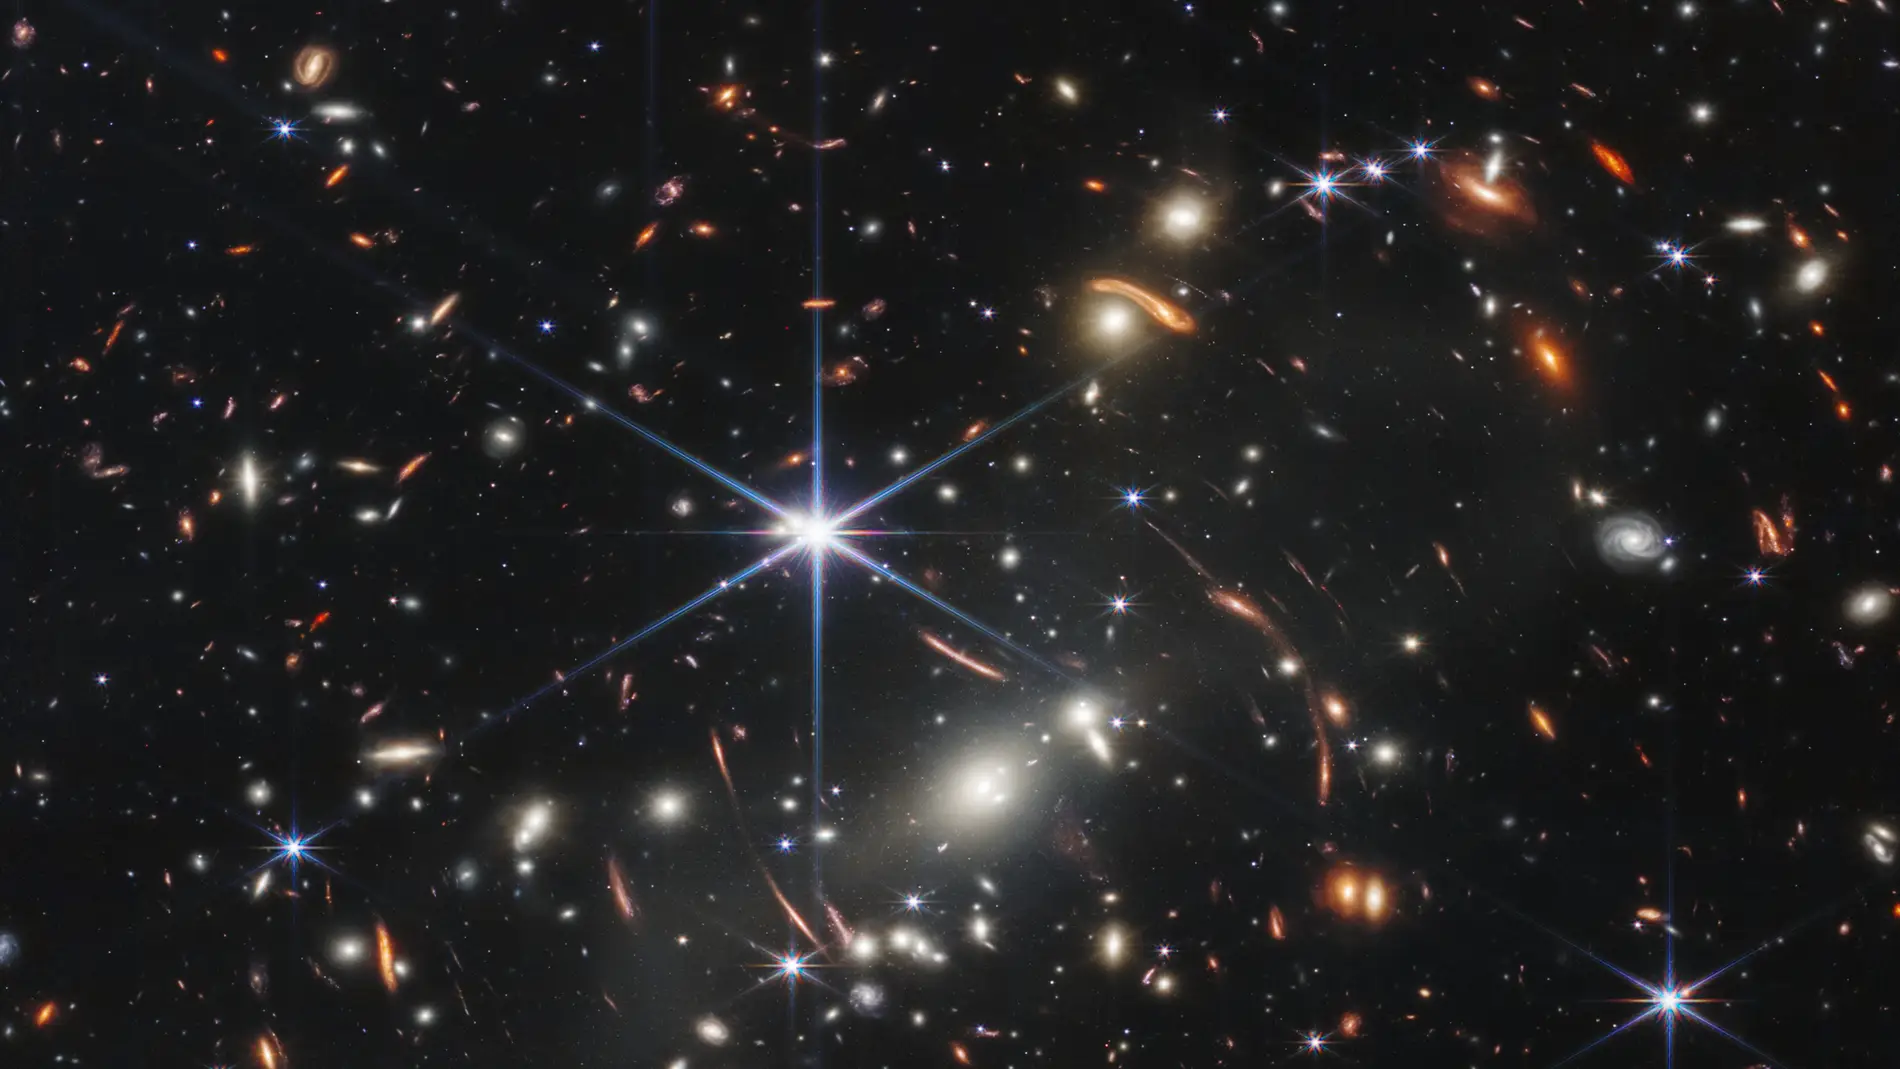 La NASA revela "una pequeña porción del universo" con la primera imagen del telescopio James Webb